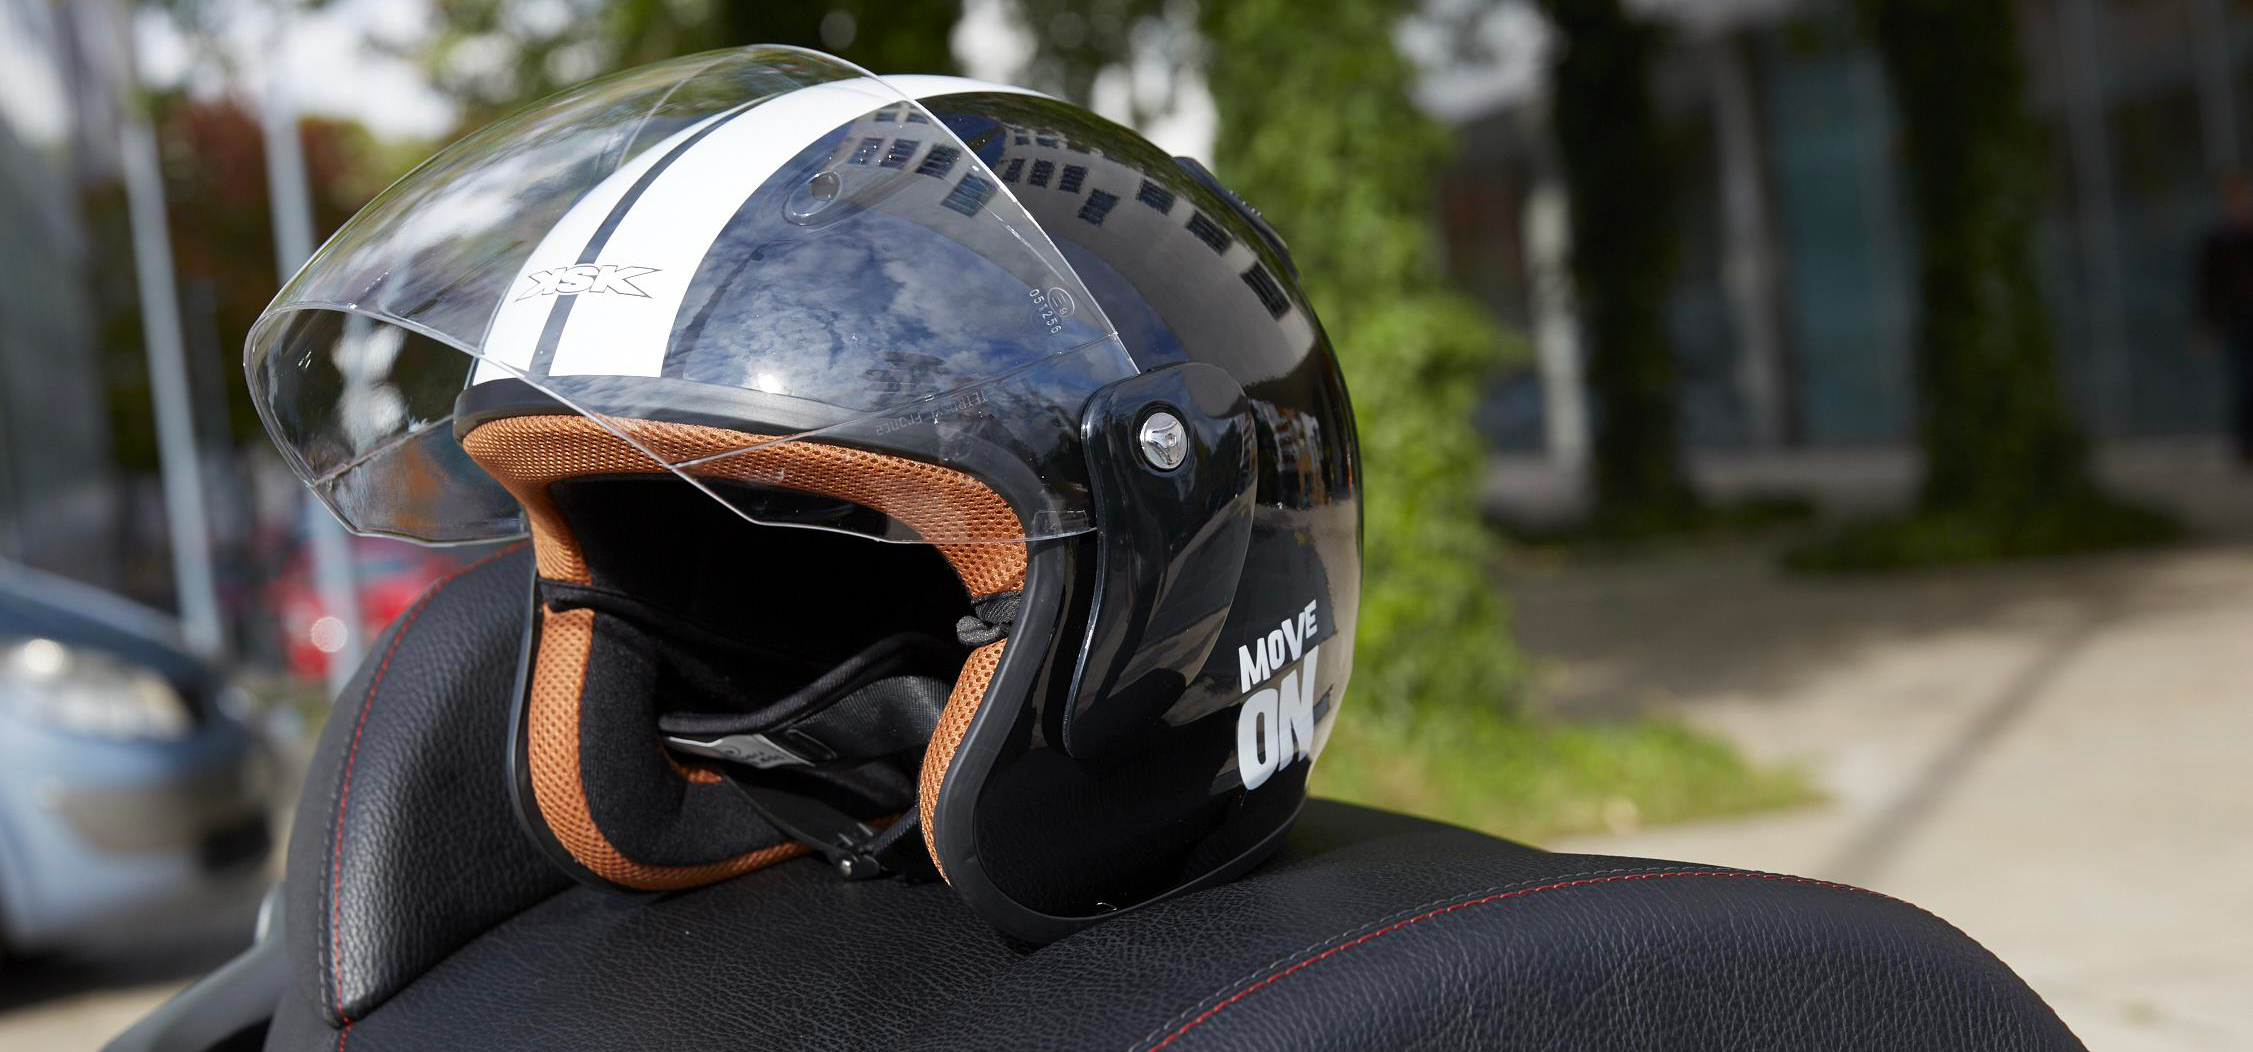 Nettoyer et protéger la visière de votre casque moto - #RoadbookScooteo